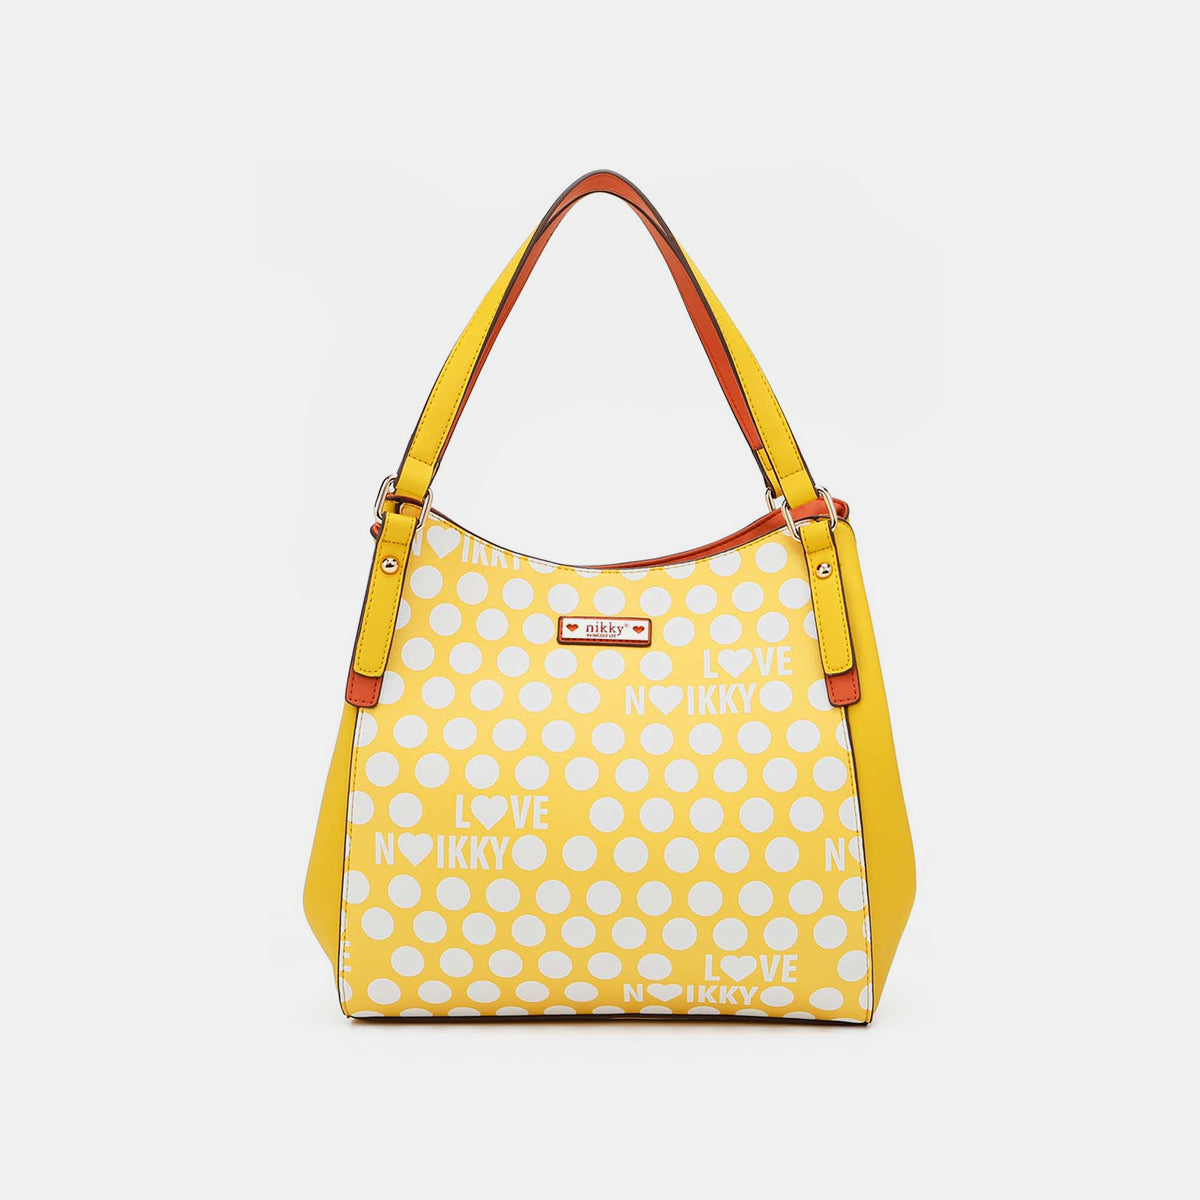 TEEK - NL Contrast Polka Dot Handbag BAG TEEK Trend Yellow  